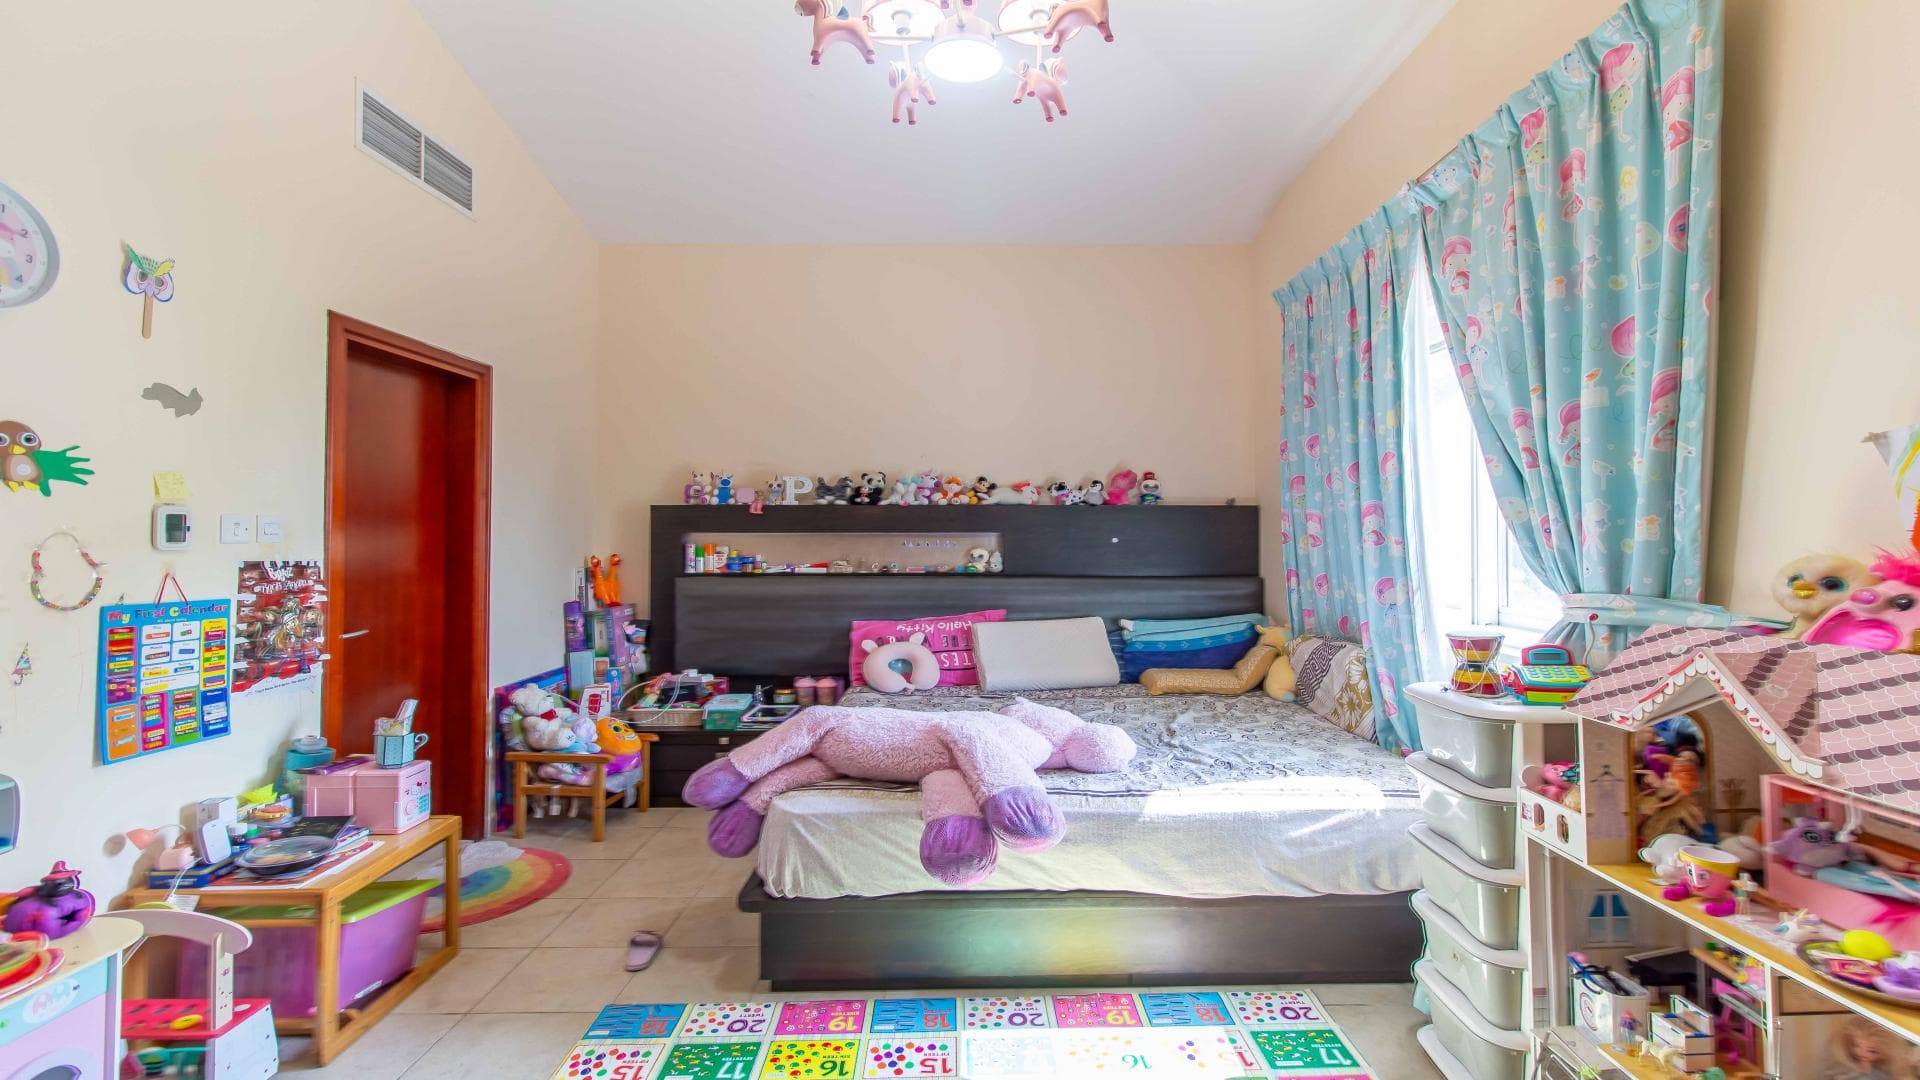 5 Bedroom Villa For Rent Al Thamam 36 Lp37870 126bee1c0d60a800.jpg